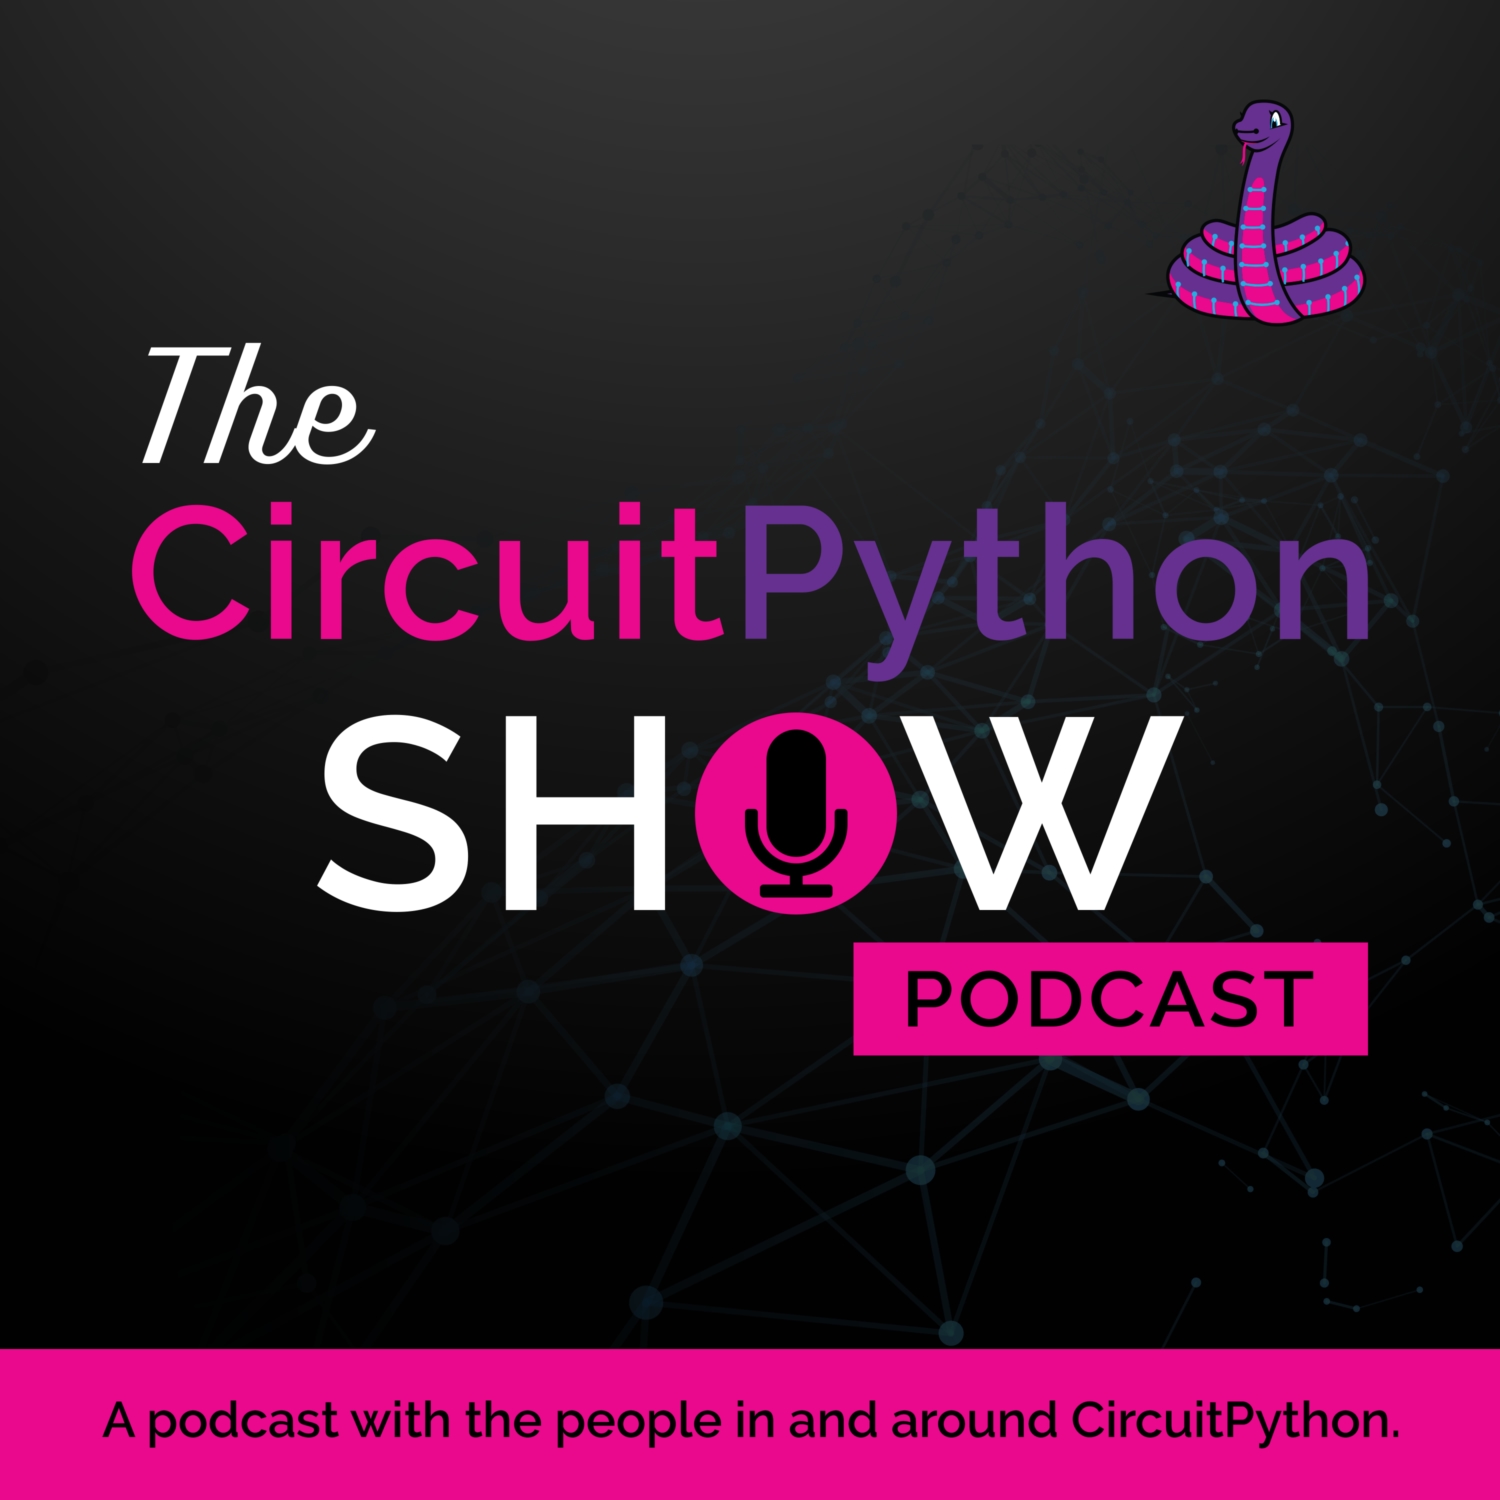 Artwork for podcast The CircuitPython Show